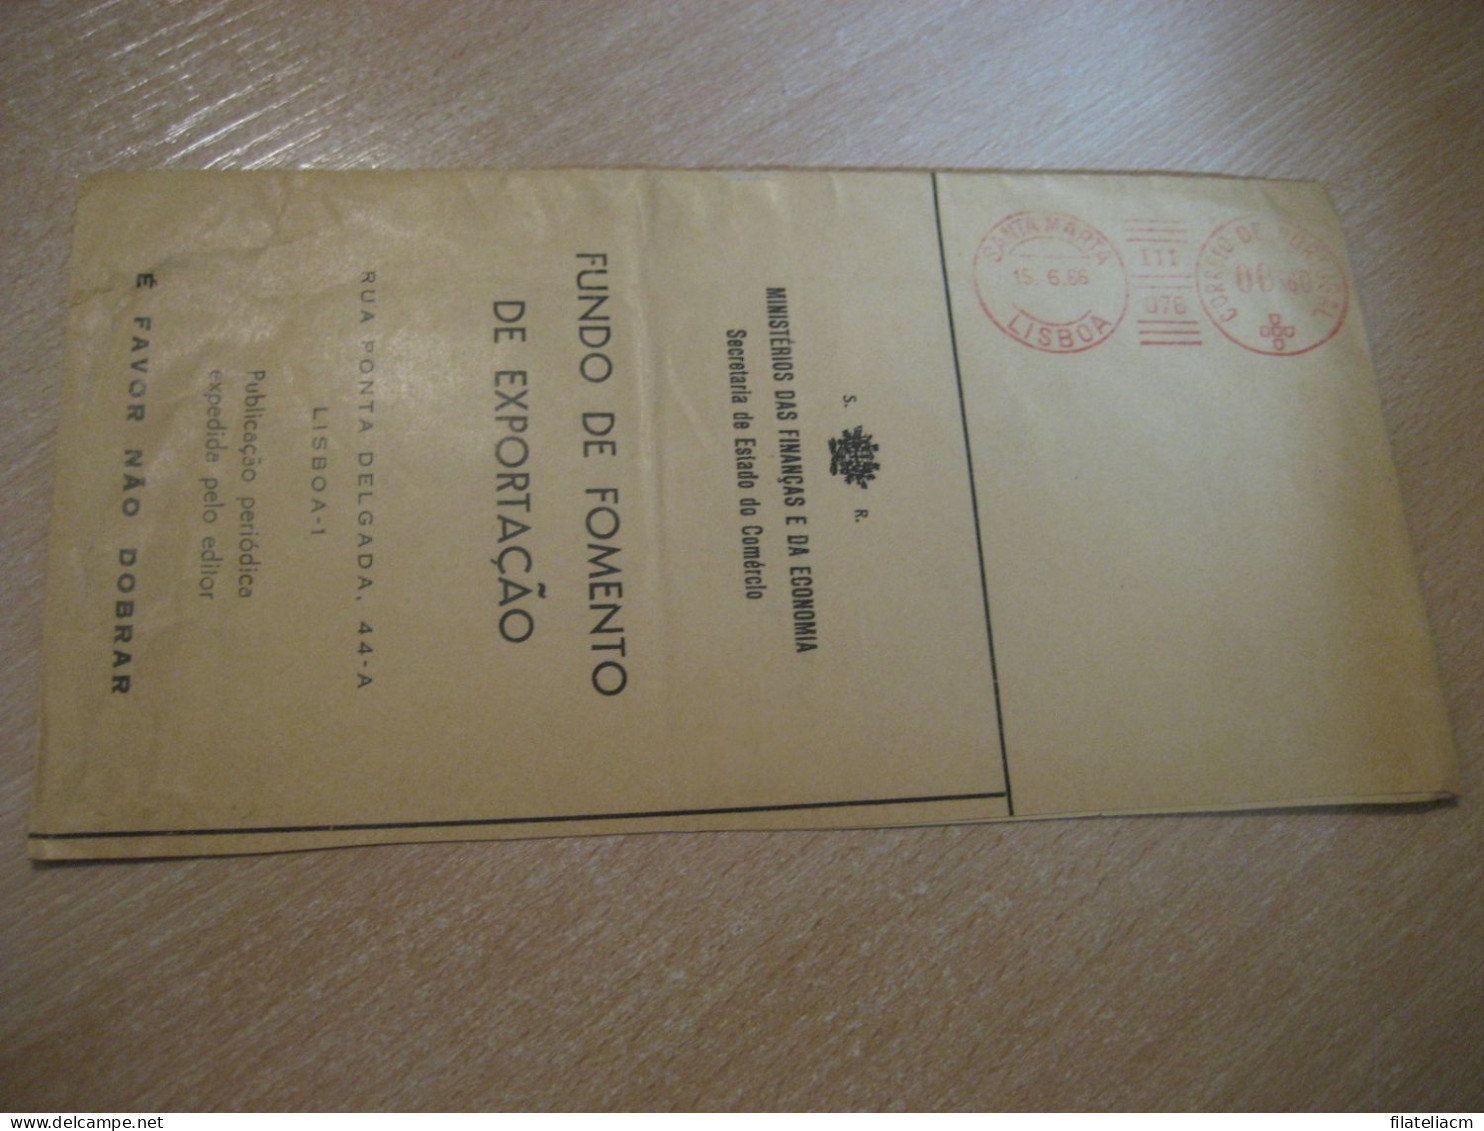 LISBOA 1966 Fomento Exportaçao Ministerios Das Finanças Economia Meter Mail Cancel Cover PORTUGAL - Covers & Documents